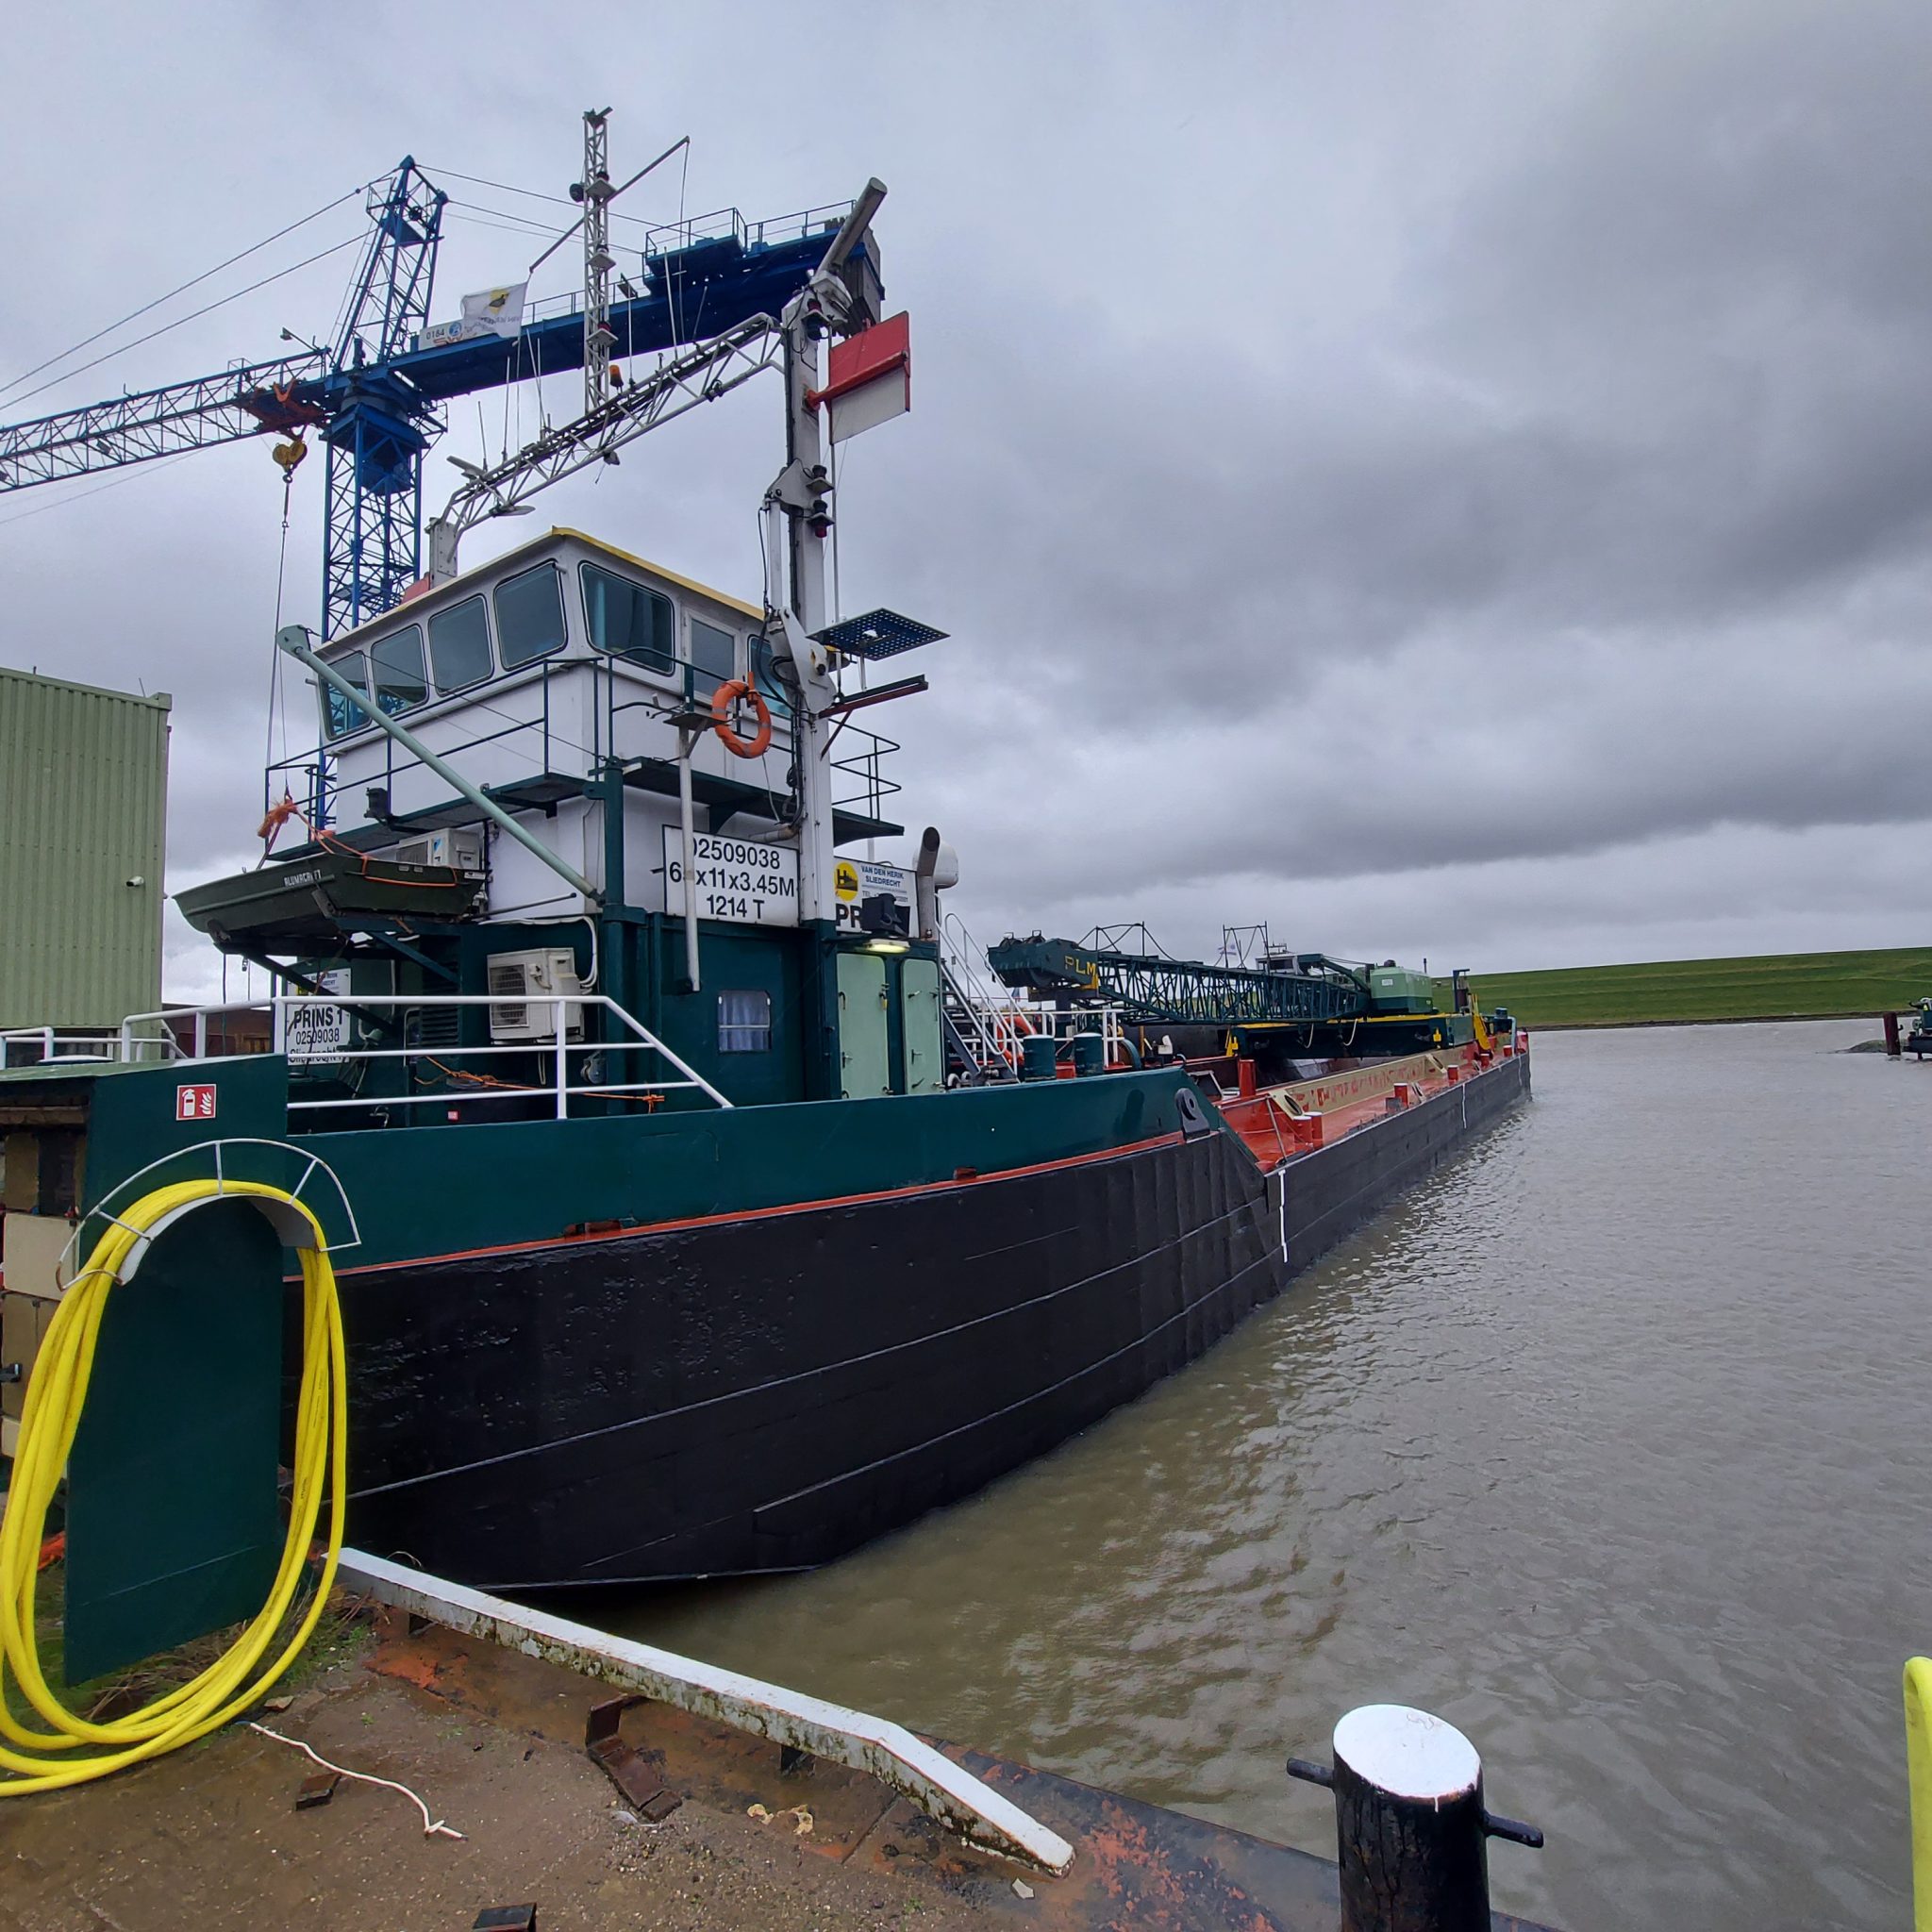 Baggerschip Prins 1 is al dertig jaar onderdeel van Van den Herik. (Foto Van den Herik)